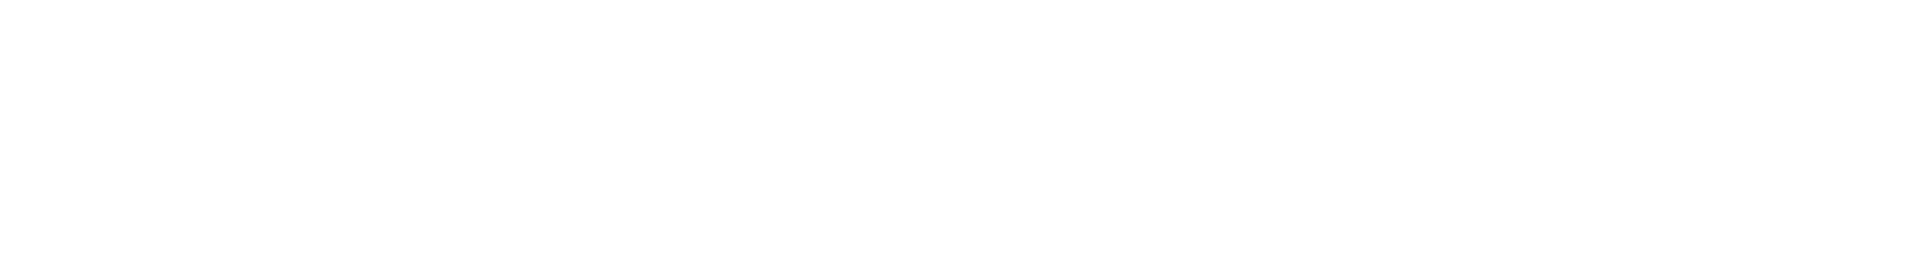 Vagelos Molecular Life Sciences Program